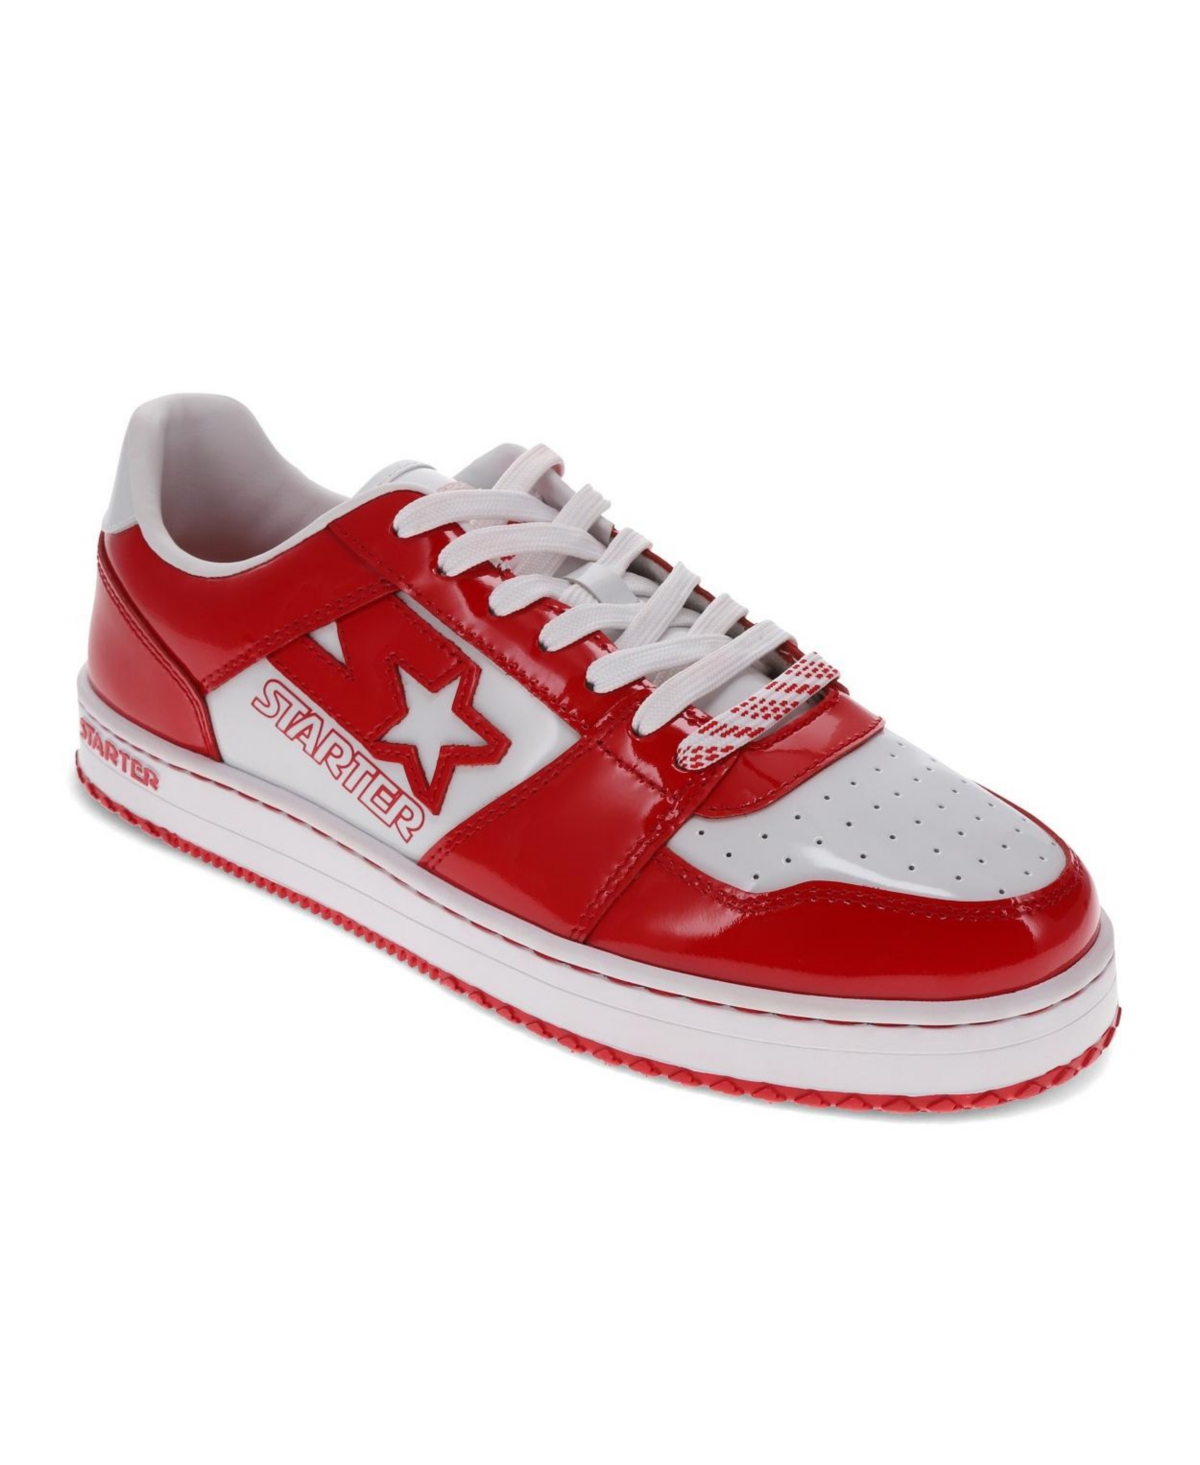 Men's Lfs 1 Tm Sneaker - Red/White